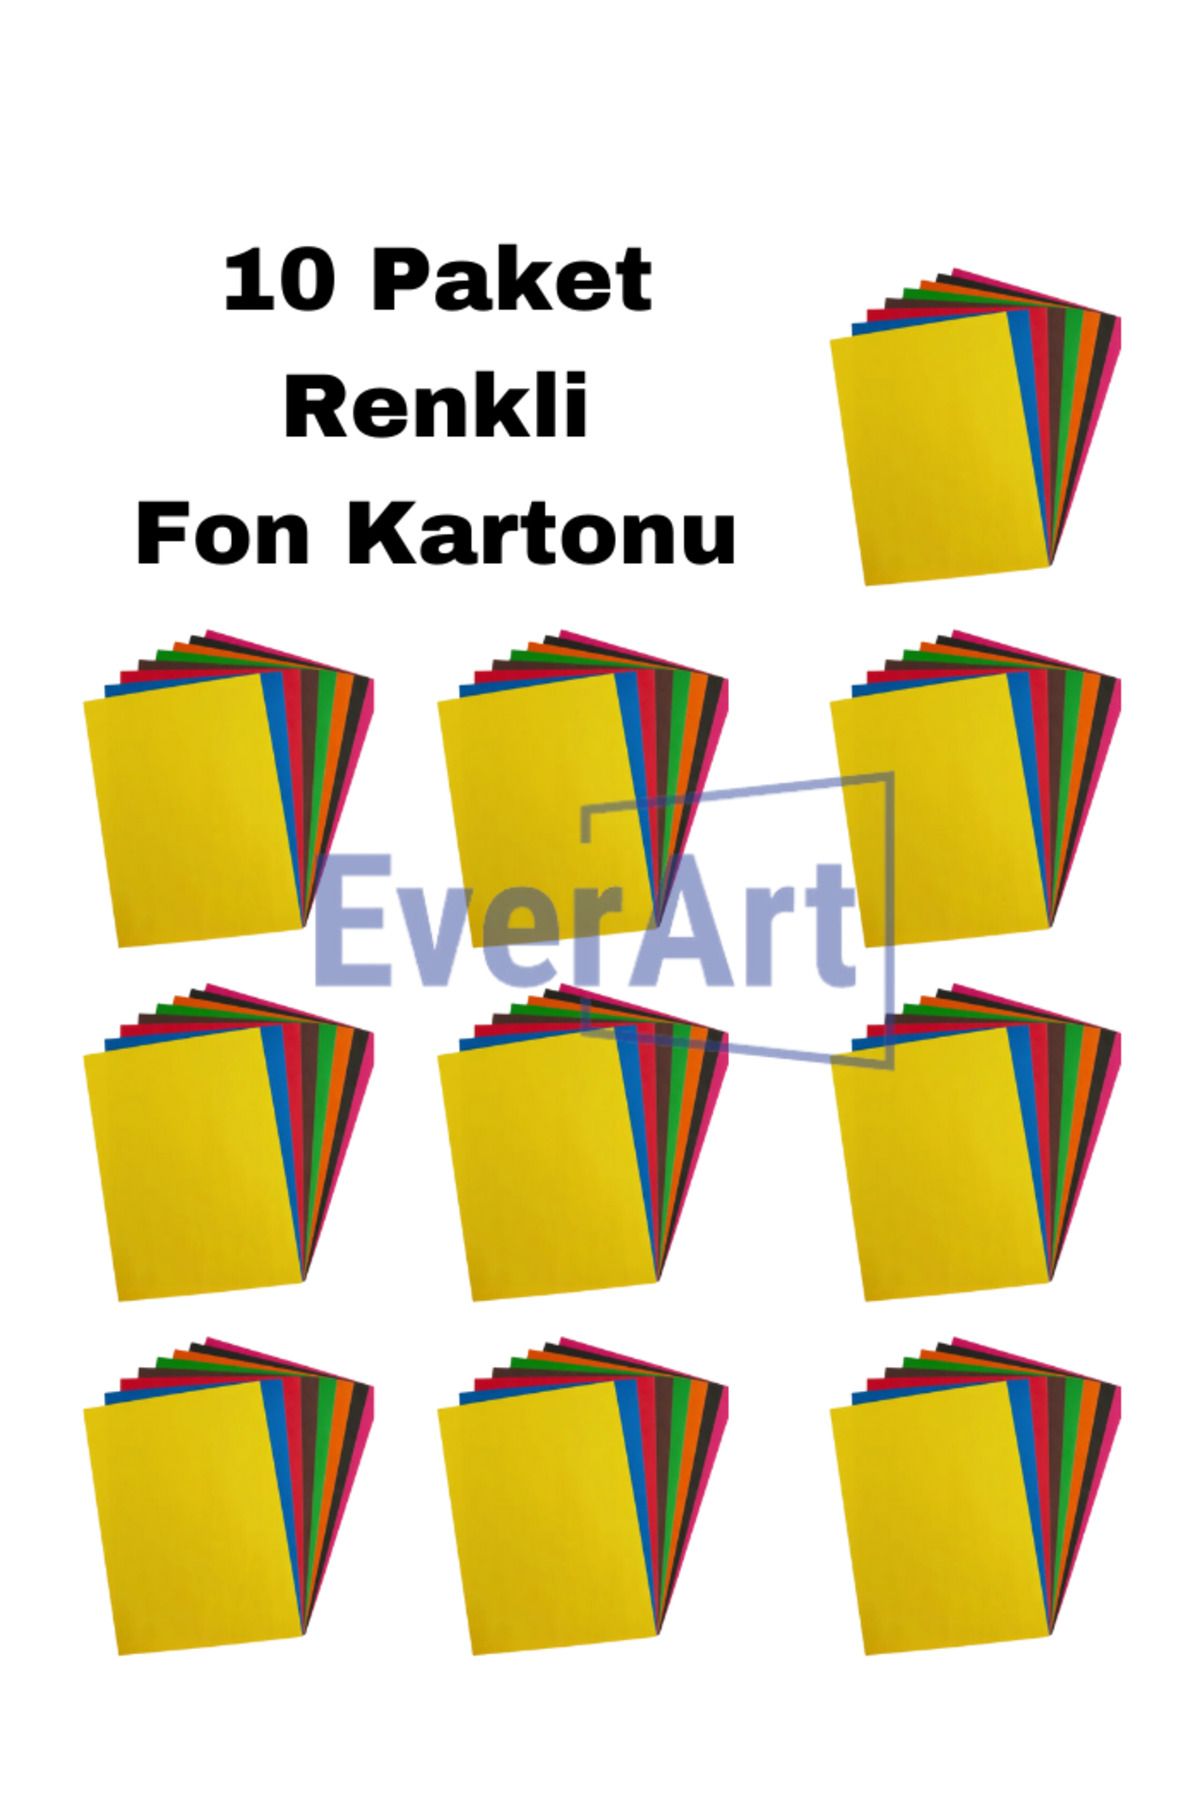 everart 10 Paket Renkli (1 paket 10 Renk) Fon Kartonu Kağıdı 24x34 cm